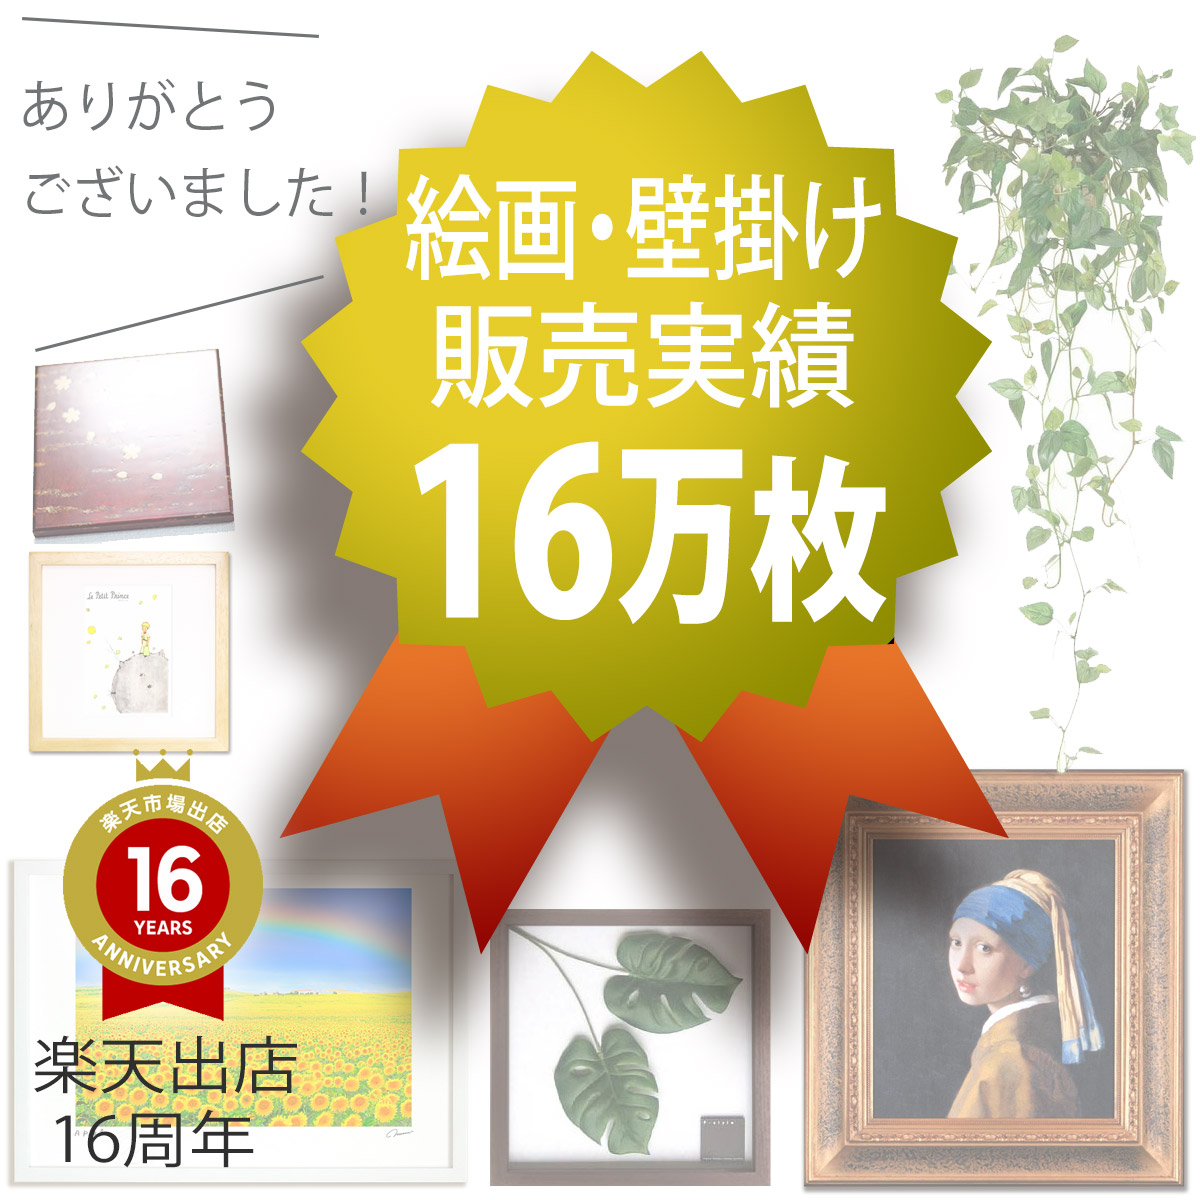 絵画》サムトフト ライトサパー - 絵画や壁掛け販売｜日本唯一の風景